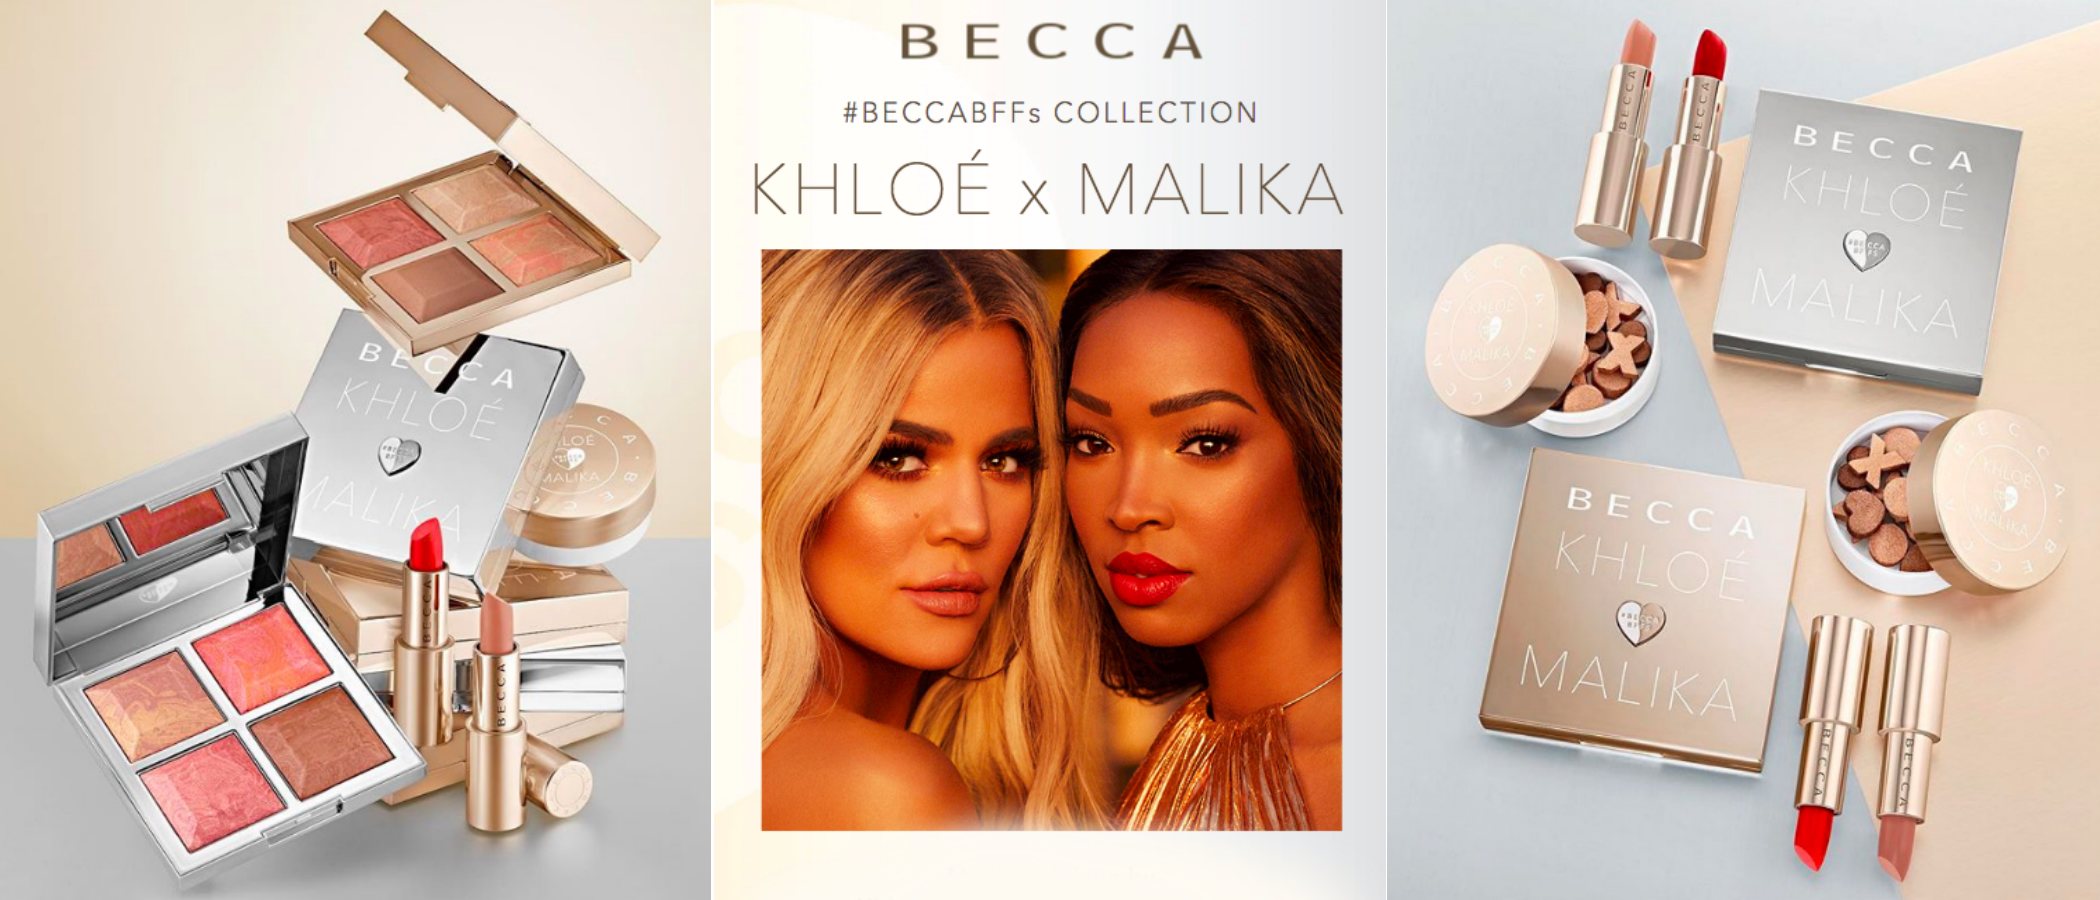 Khloé Kardashian y Malika Haqq lanzan una colección de maquillaje en colaboración con Becca